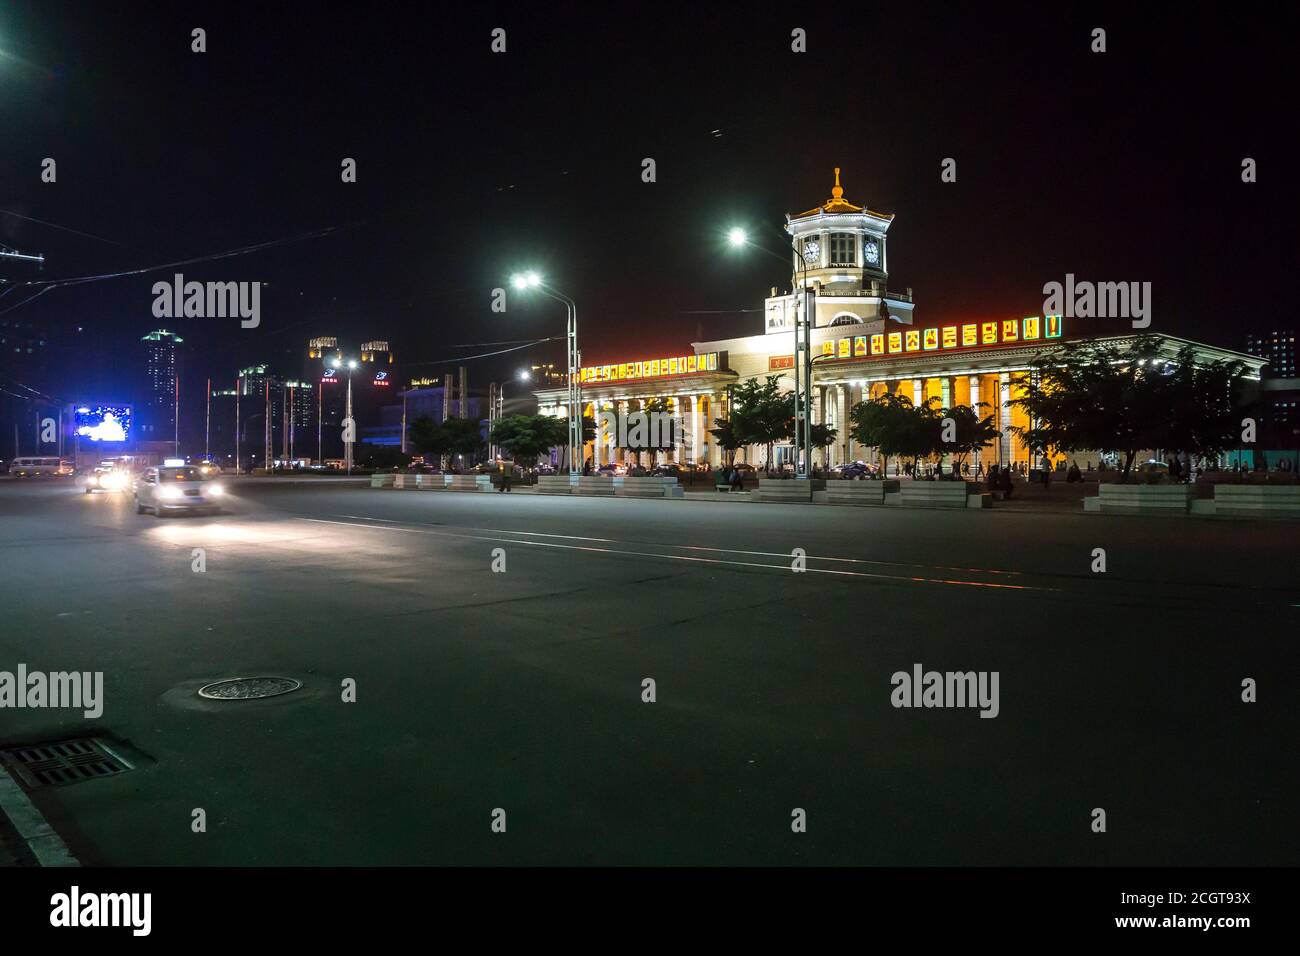 Pyongyang Train station at night, Pyongyang, North Korea Stock Photo